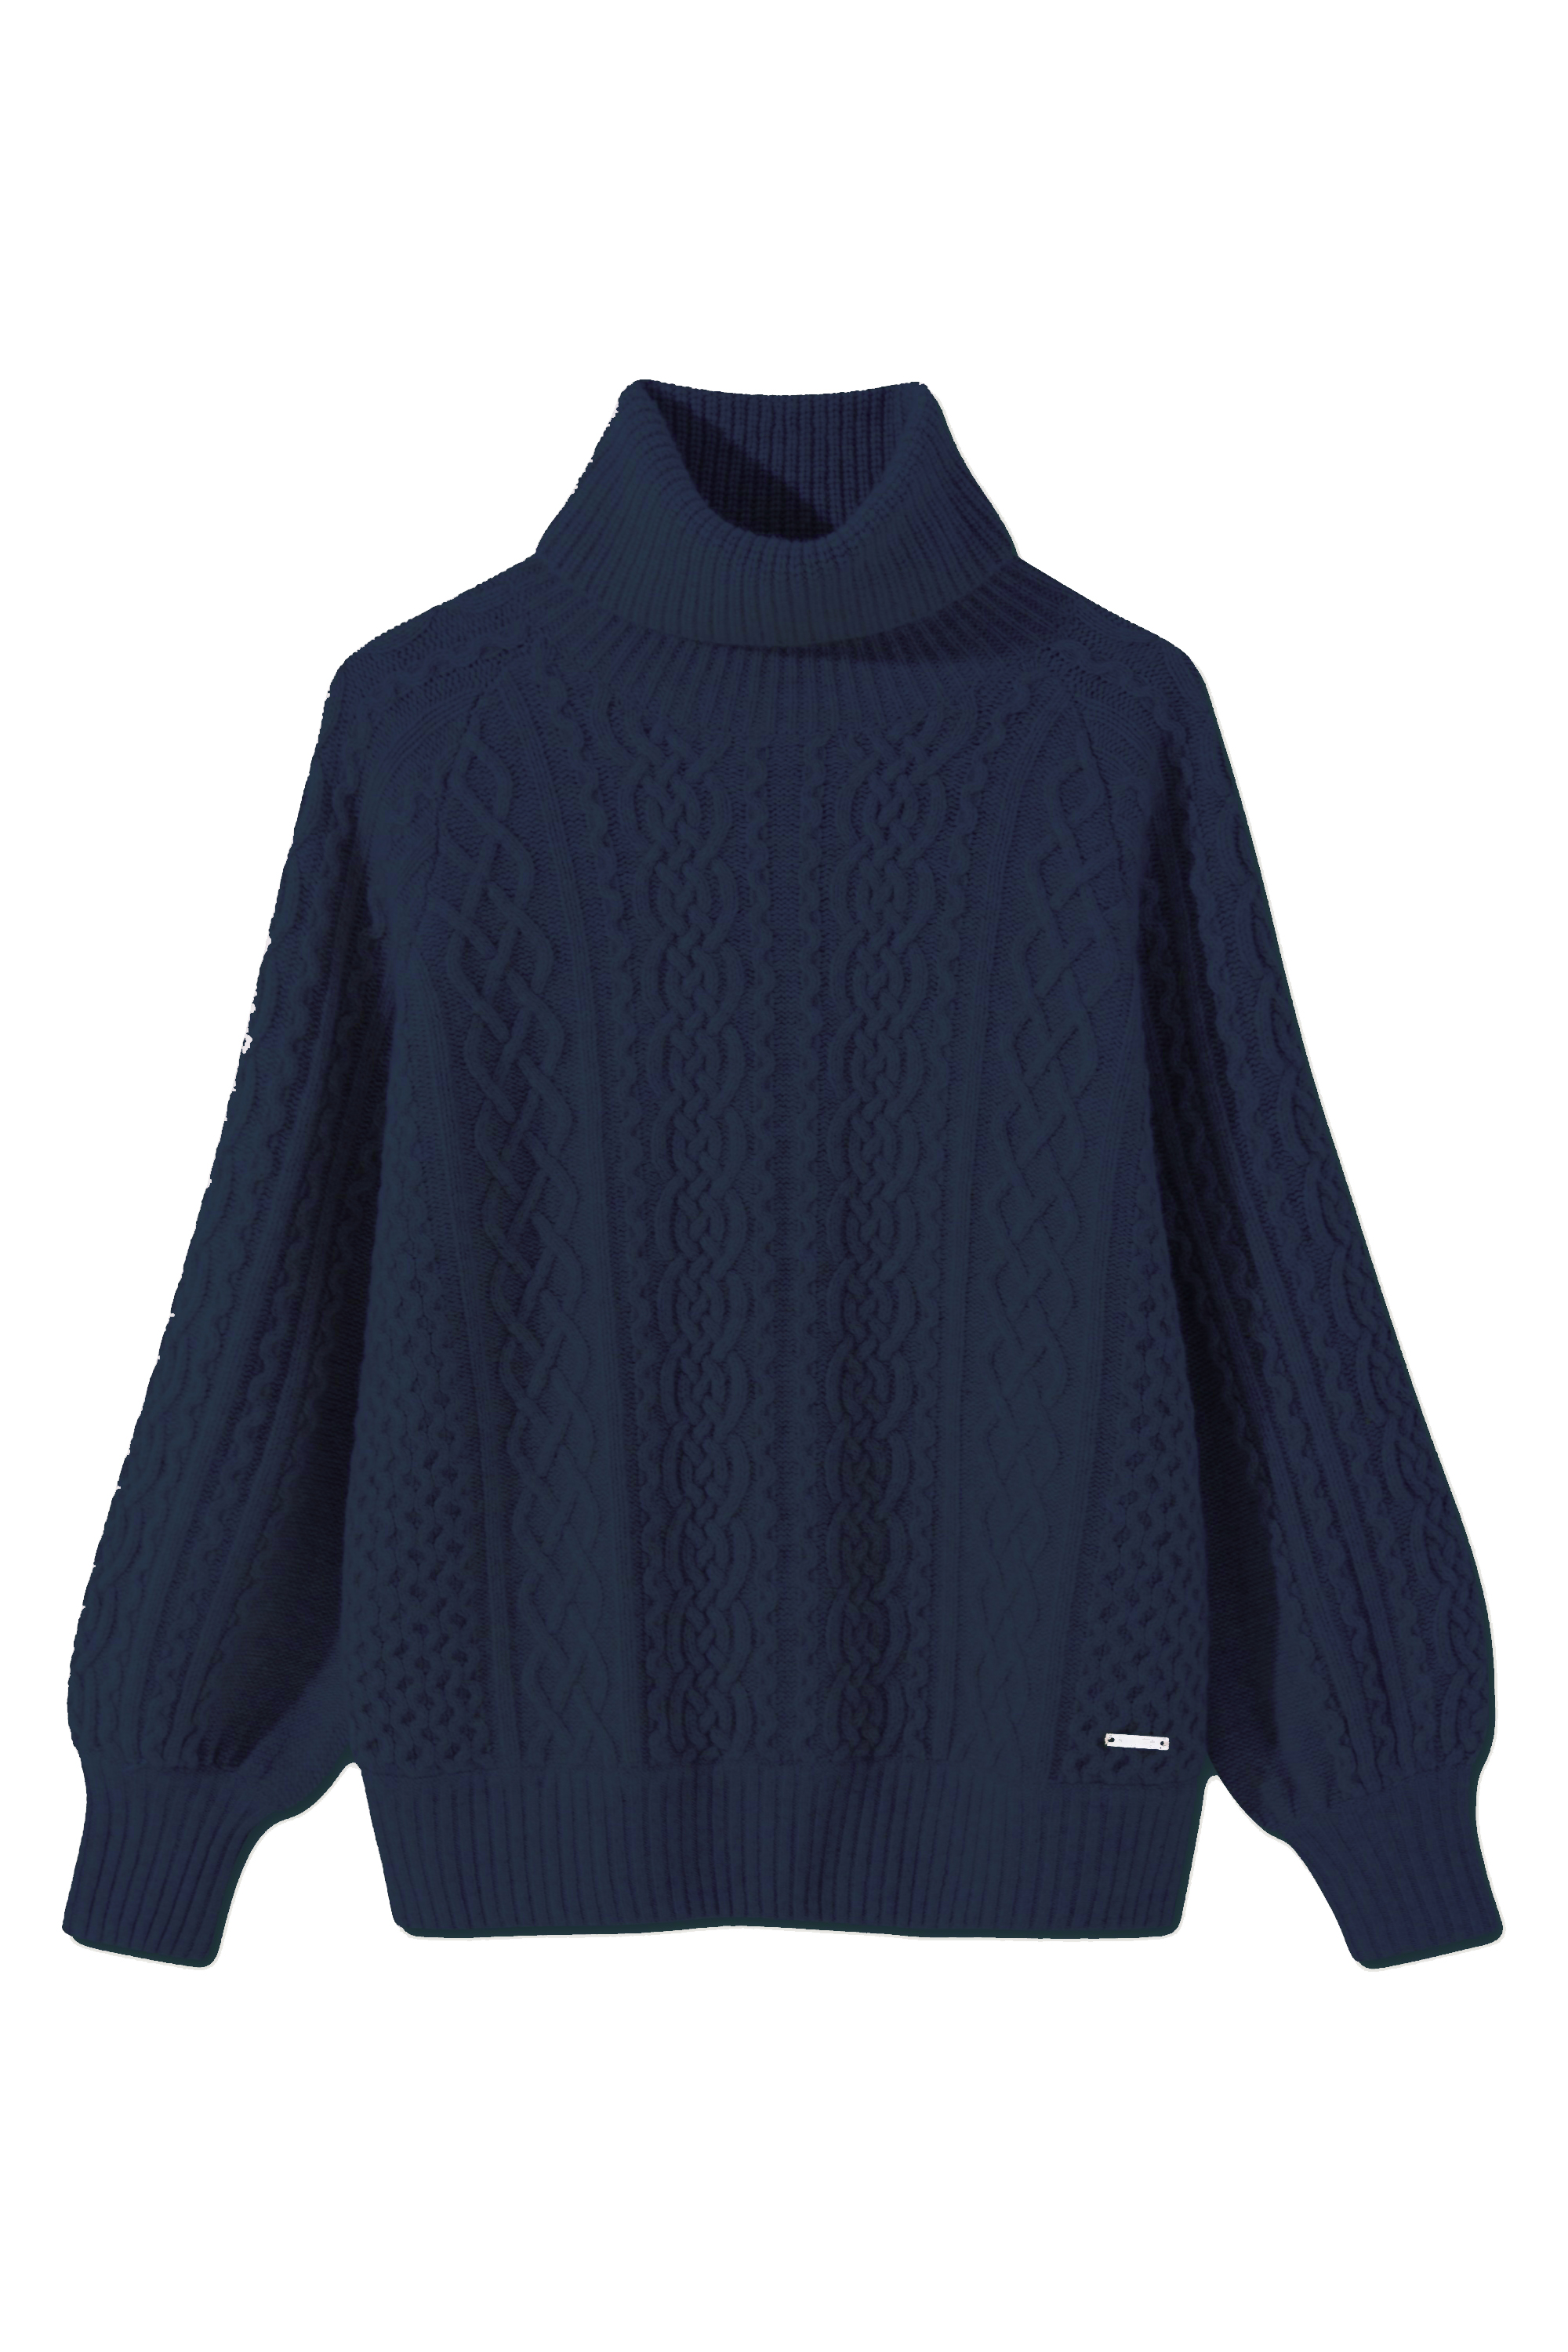 Rue De Tokyo Navy Koral Sweater